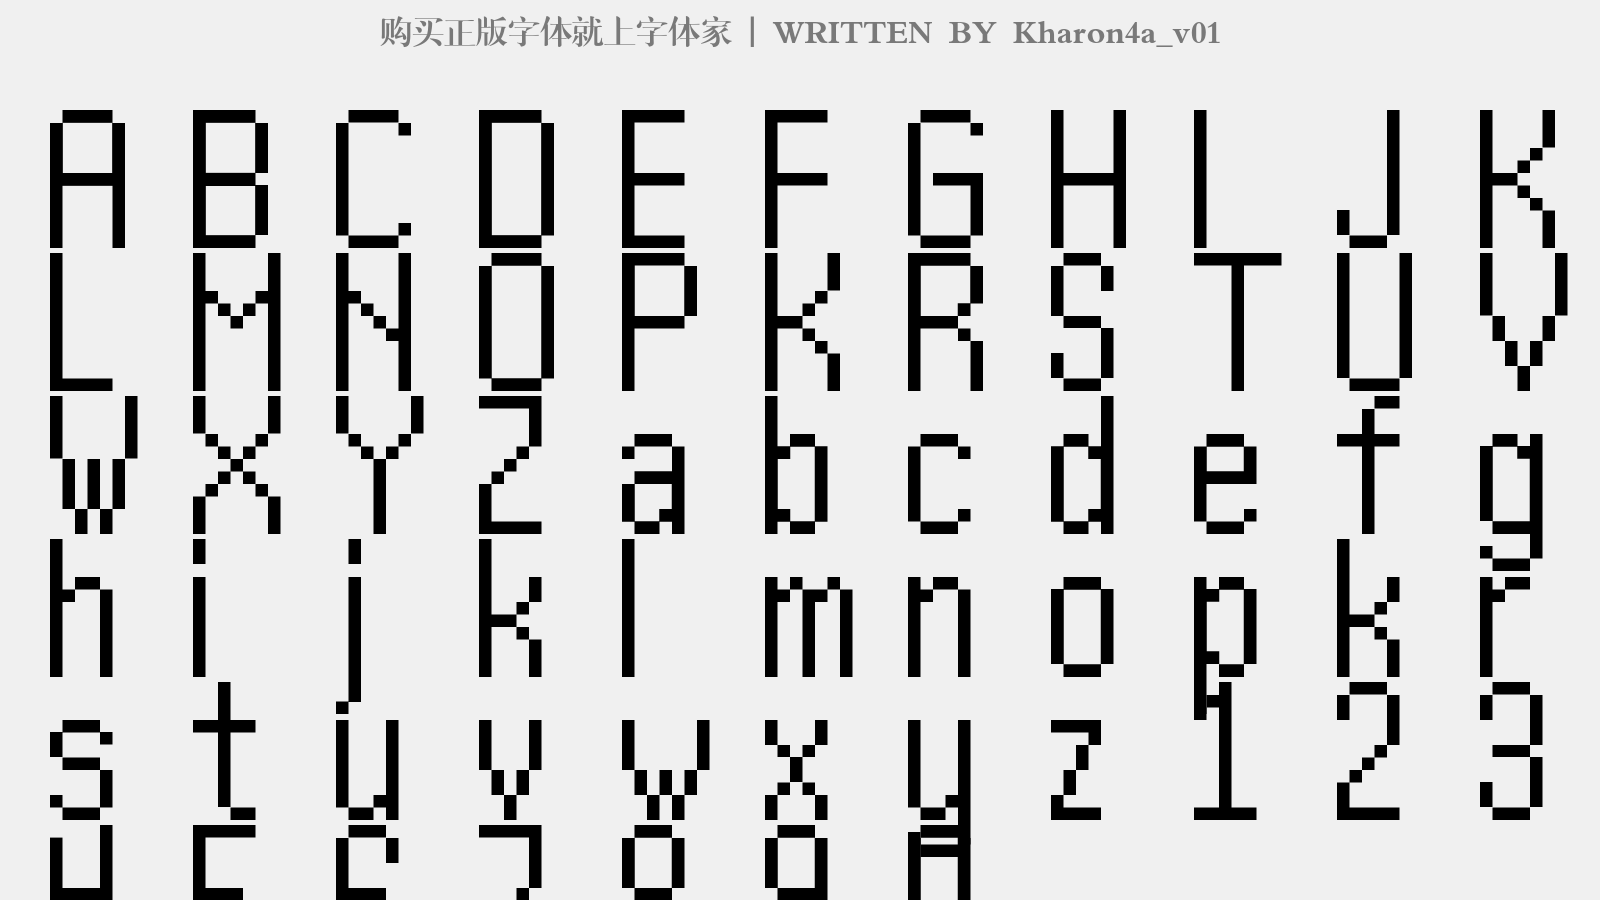 Kharon4a_v01 - 大写字母/小写字母/数字